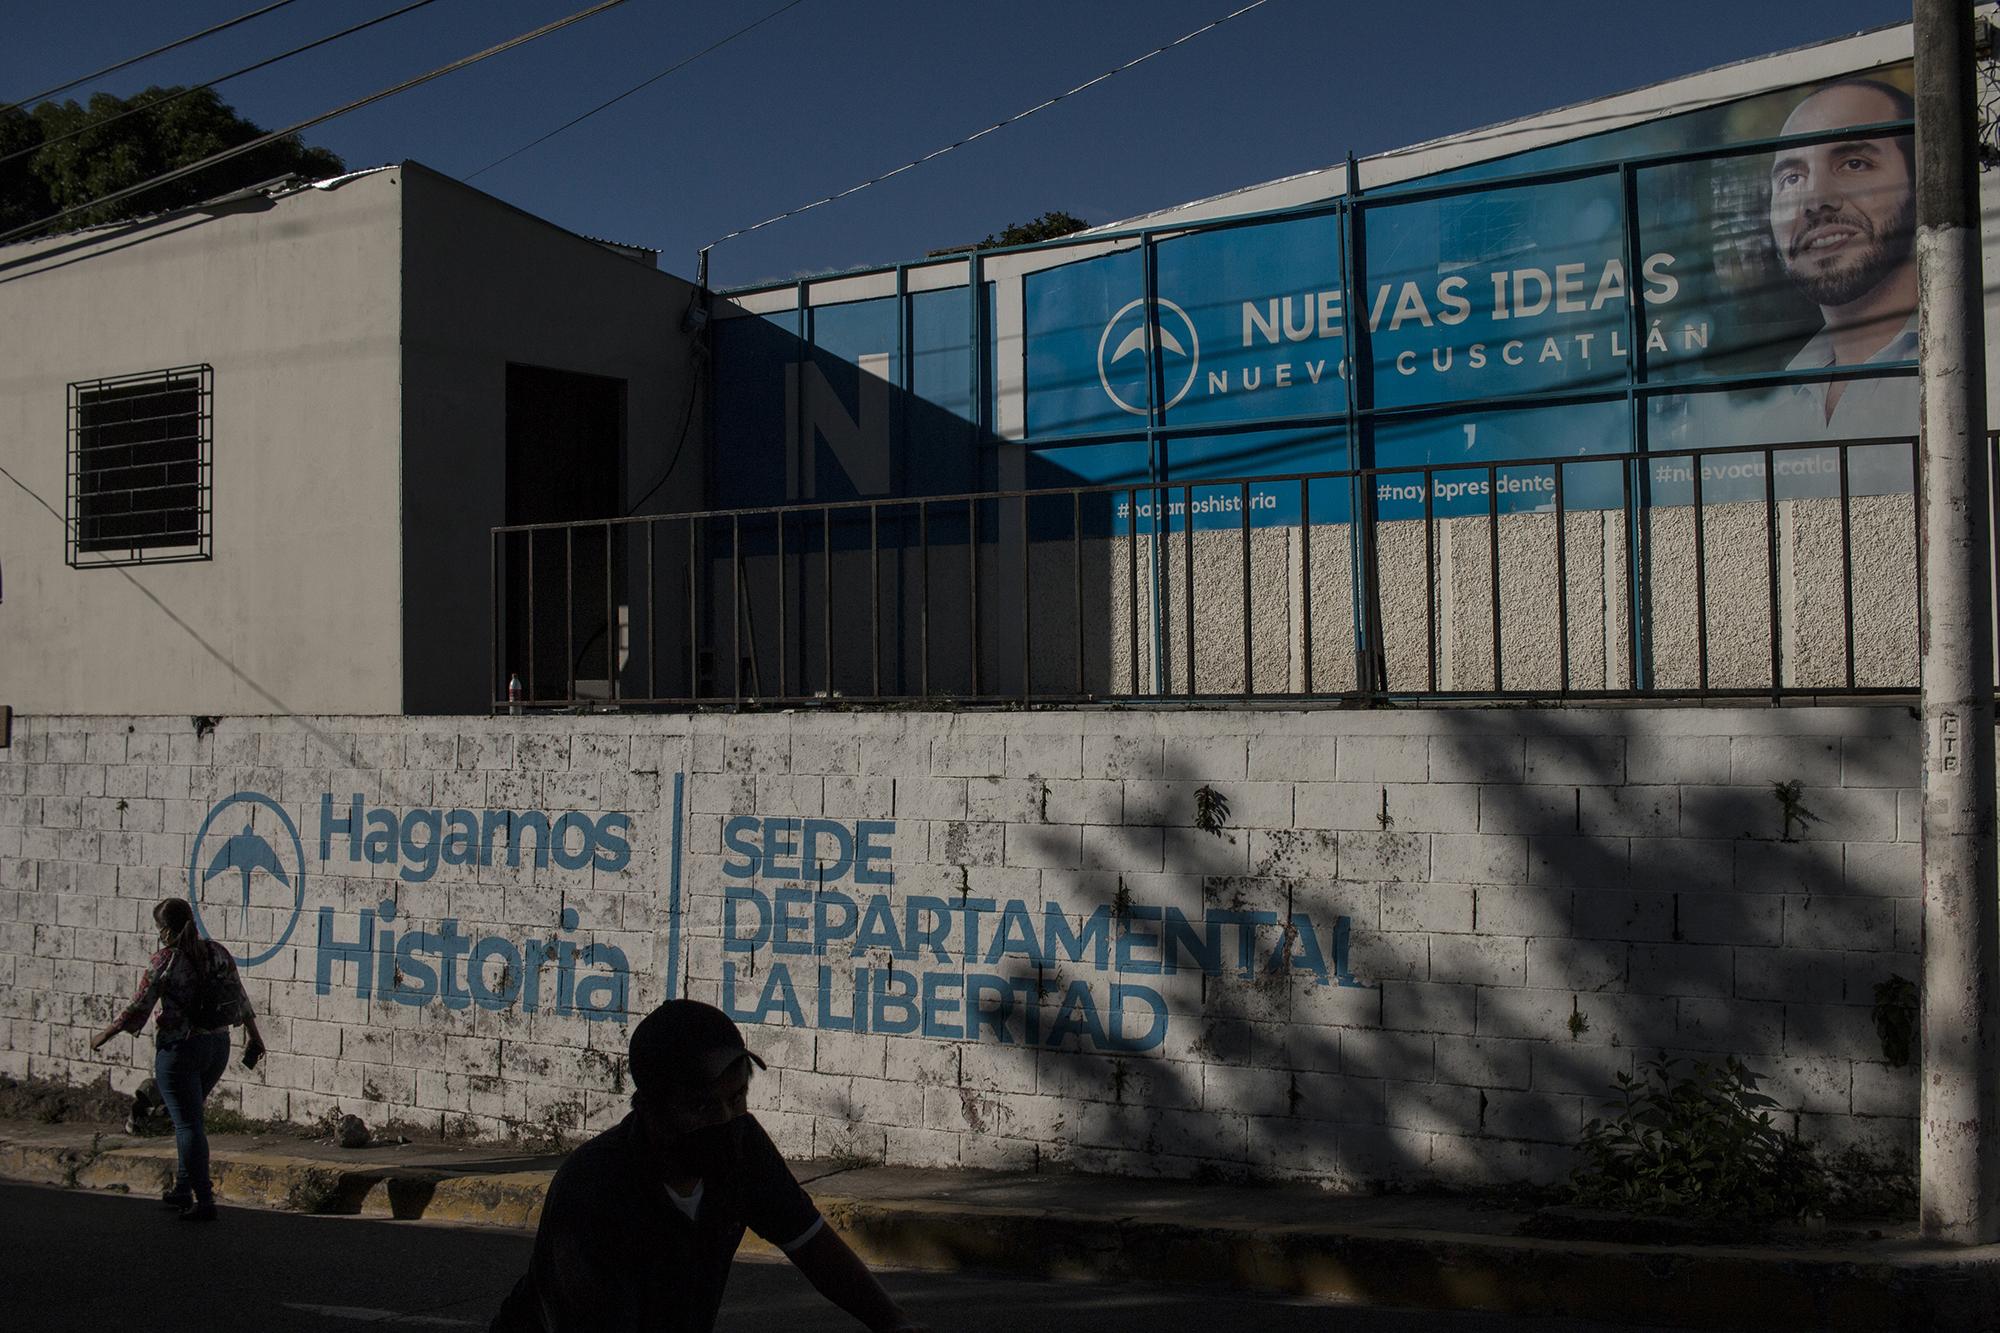 Sede departamental del partido que Bukele fundó en 2018, Nuevas Ideas. Nuevo Cuscatlán fue el primer lugar donde Bukele gobernó bajo la bandera del FMLN. Foto de El Faro: Víctor Peña.